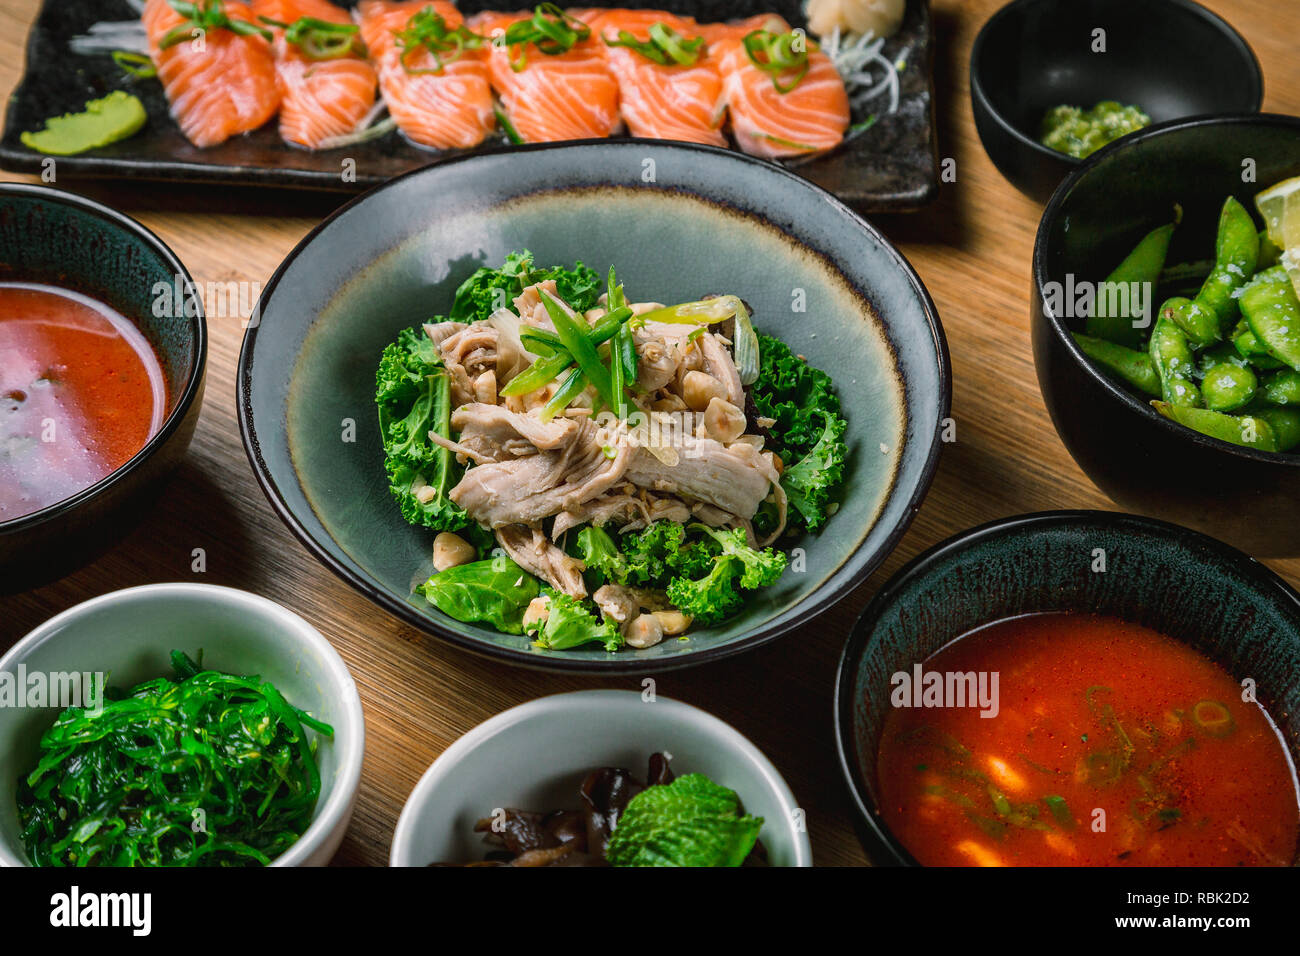 Organic and sustainable food from fancy japanese restaurant, sushi, sashimi, seaweed, edamame Stock Photo